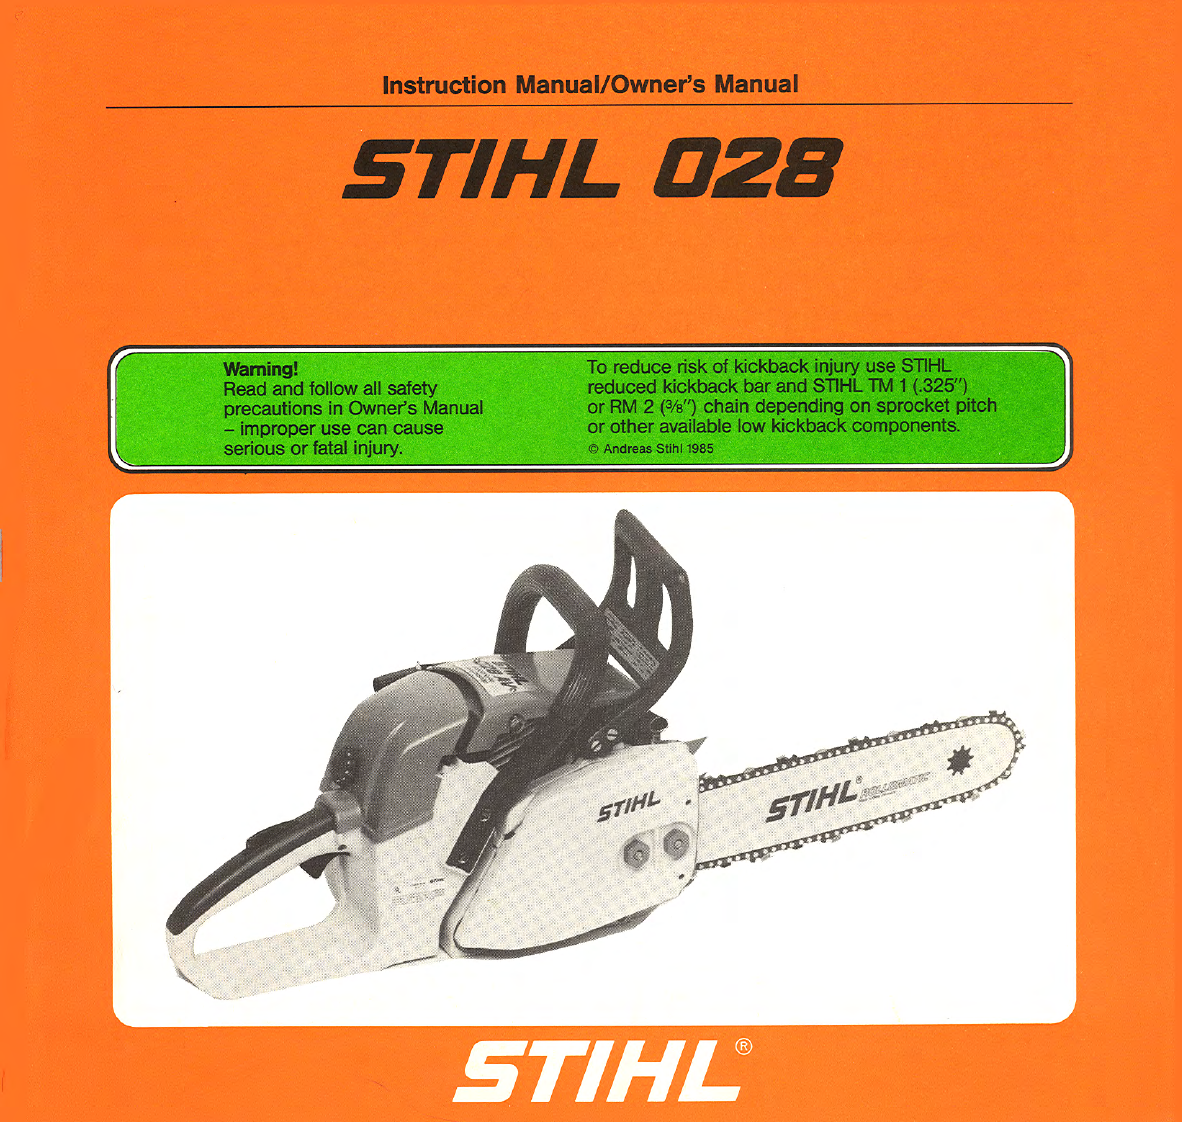 Бензопила stihl ms 180 – инструмент, достойный внимания